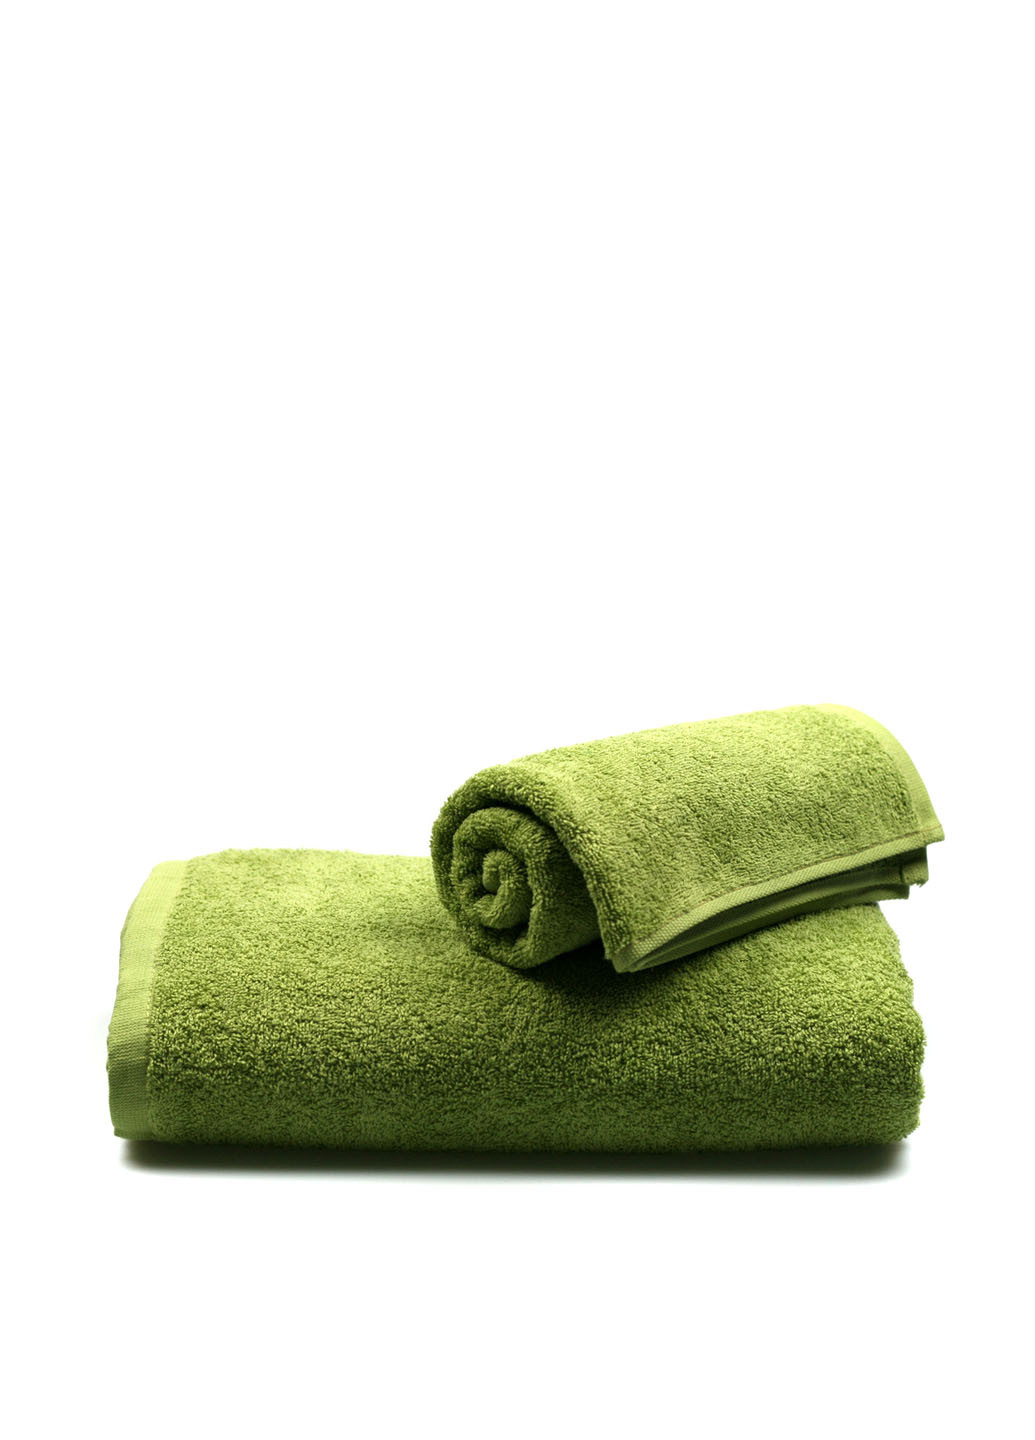 Home Line полотенце, 70х140 см однотонный оливково-зеленый производство - Туркменистан